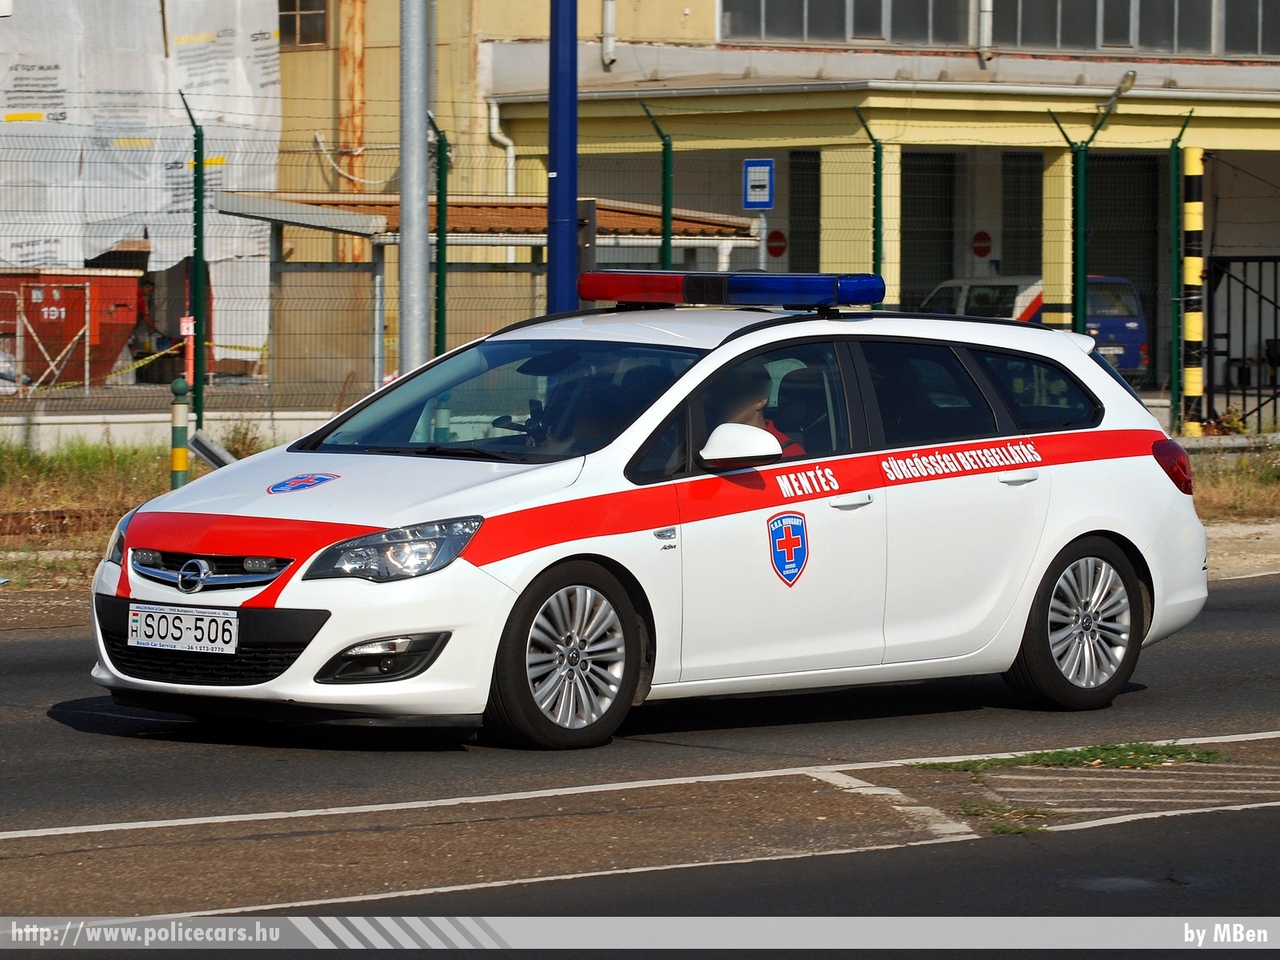 Opel Astra J Sports Tourer, SOS Assistance Hungary Kft., fotó: MBen
Keywords: magyar Magyarország mentő mentőautó Hungary hungarian ambulance SOS-506